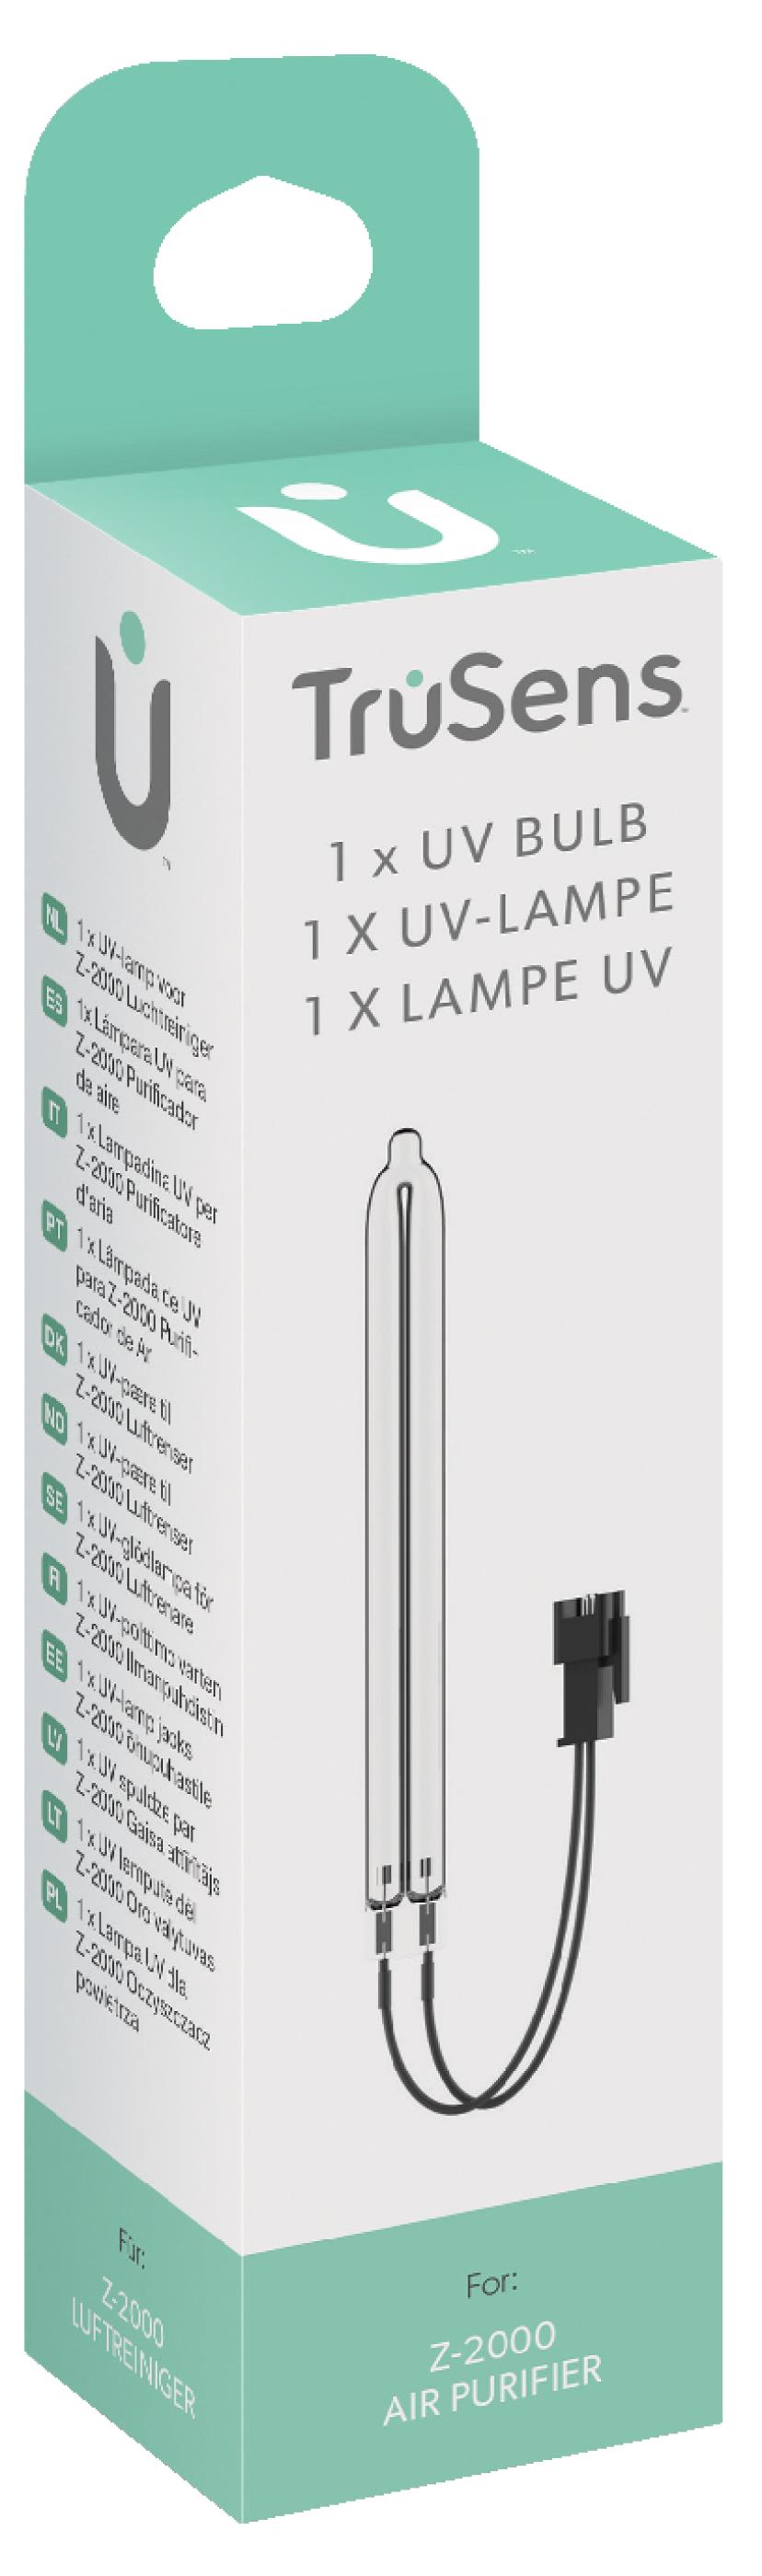 Leitz UV-lampe – TruSens Z-2000